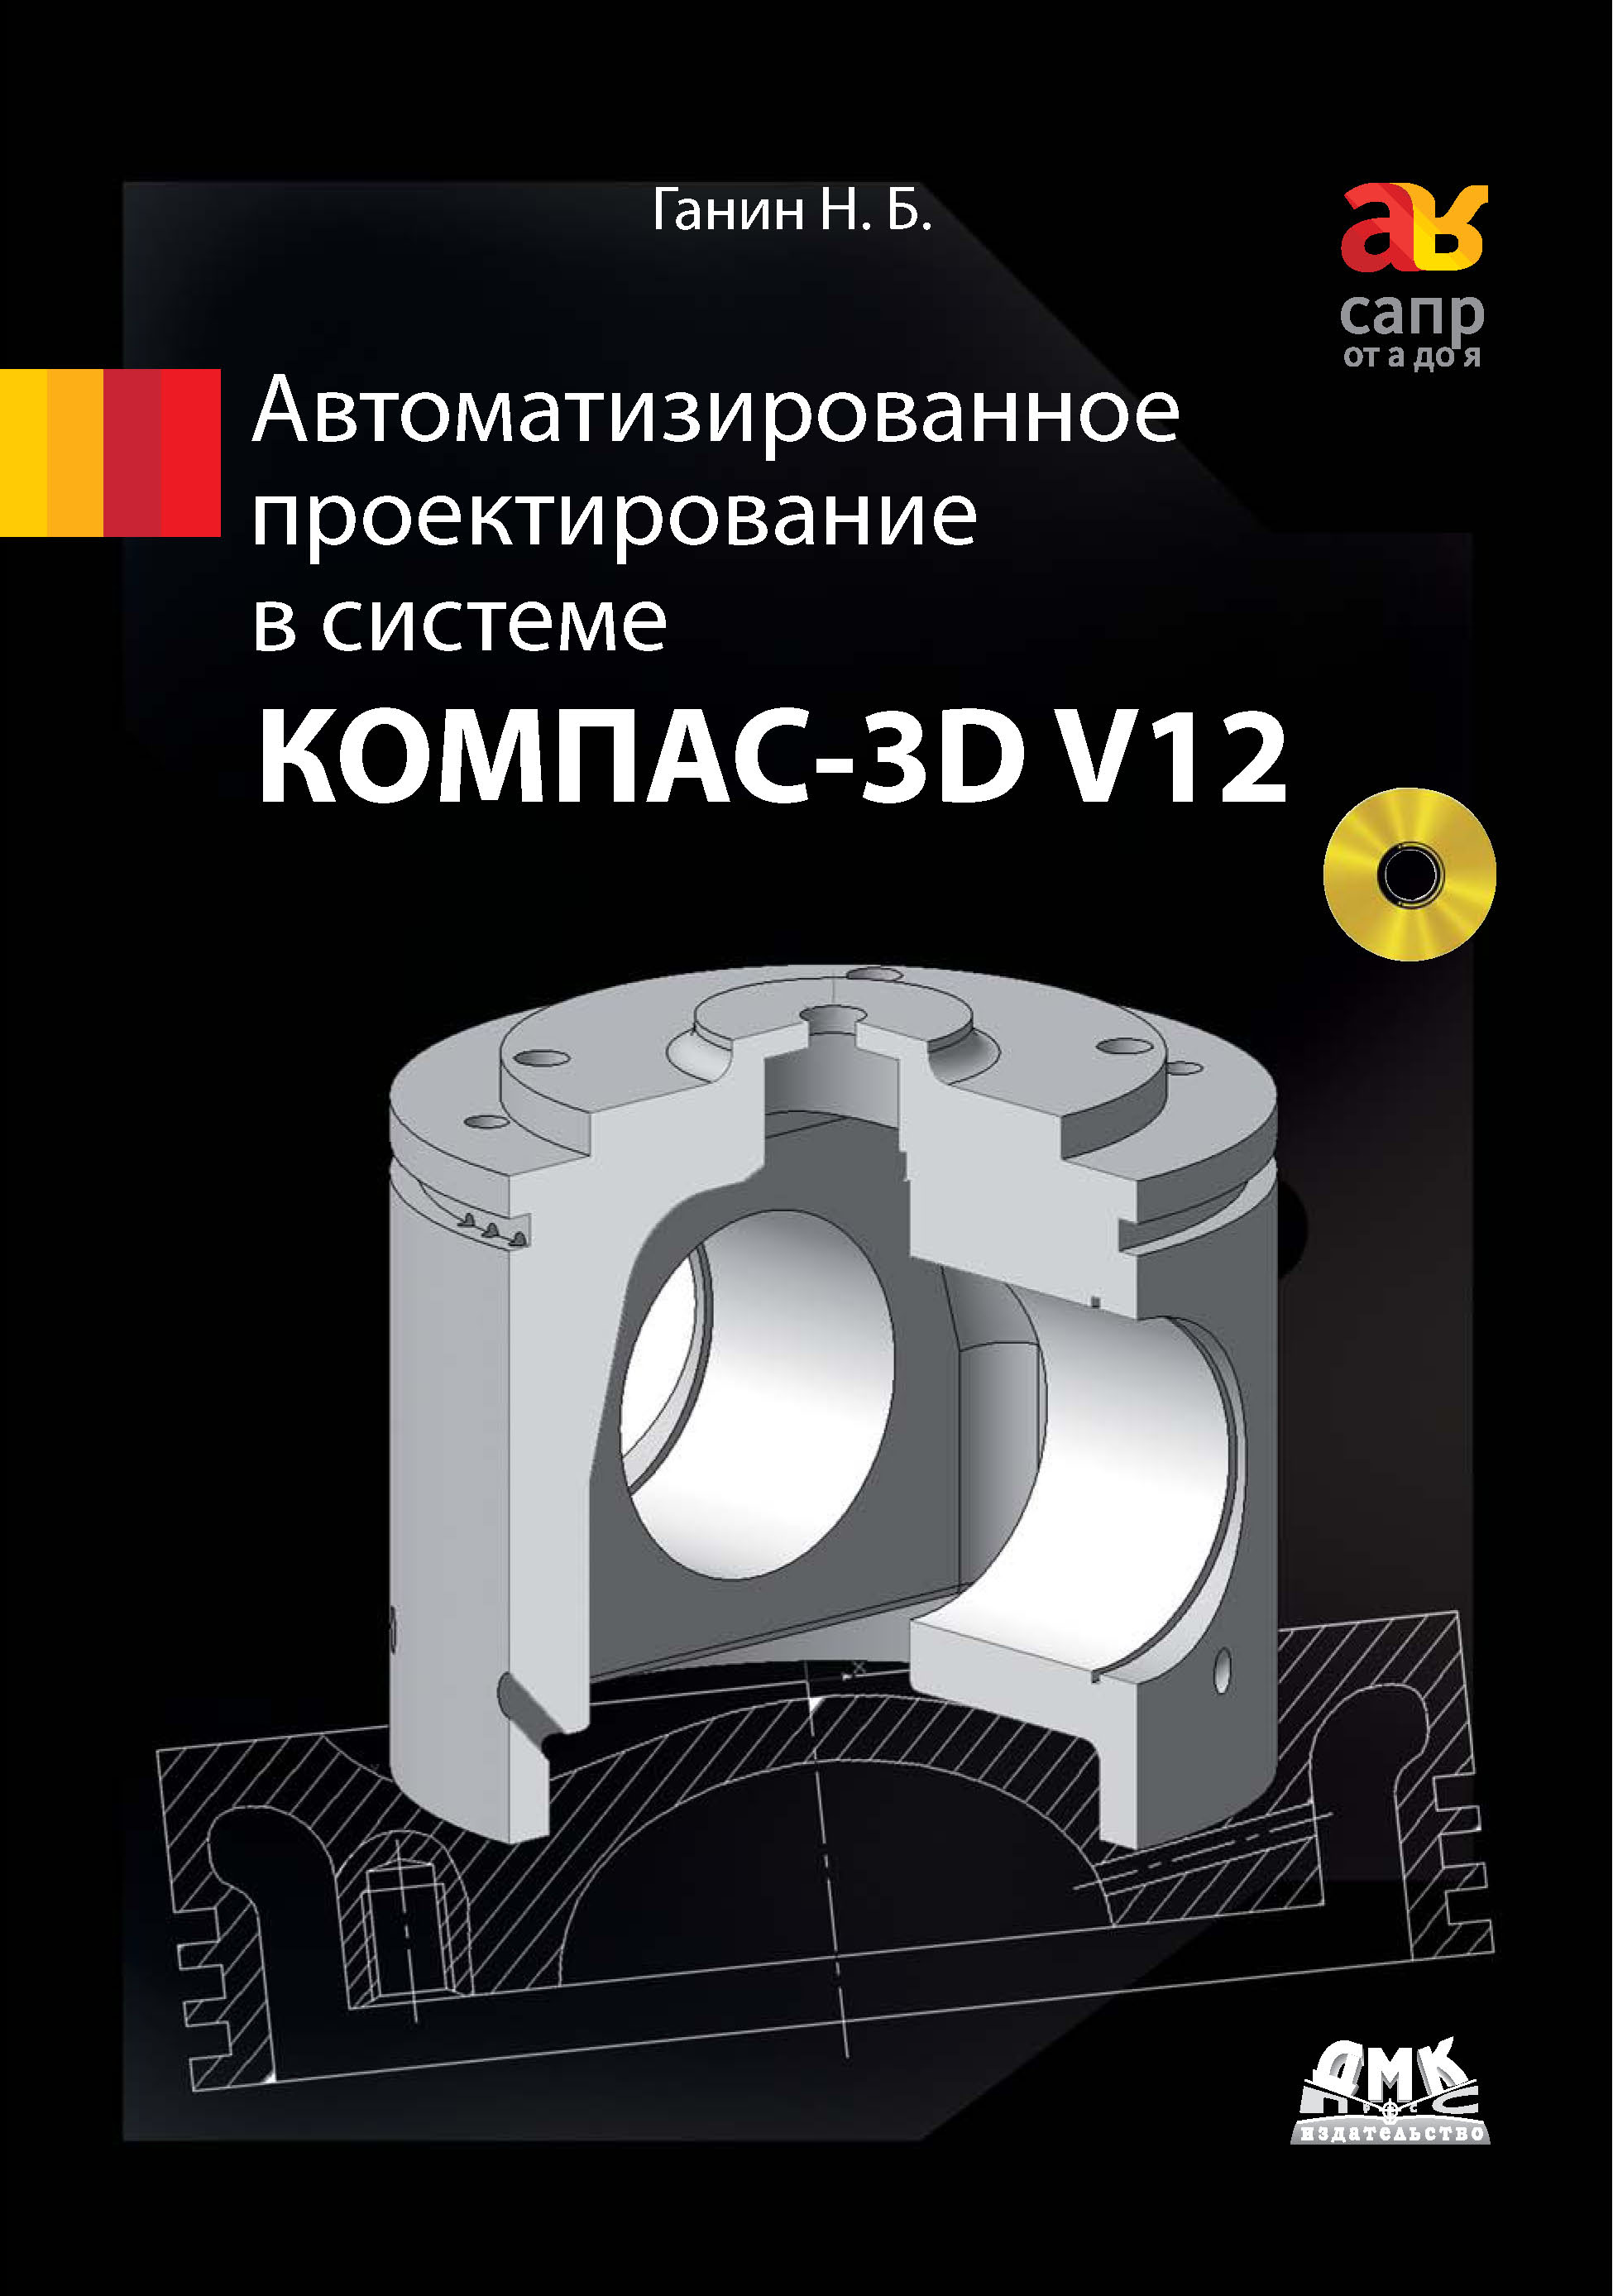 Книга САПР от А до Я Автоматизированное проектирование в системе КОМПАС-3D V12 созданная Н. Б. Ганин может относится к жанру программы, проектирование, самоучители. Стоимость электронной книги Автоматизированное проектирование в системе КОМПАС-3D V12 с идентификатором 22072810 составляет 319.00 руб.